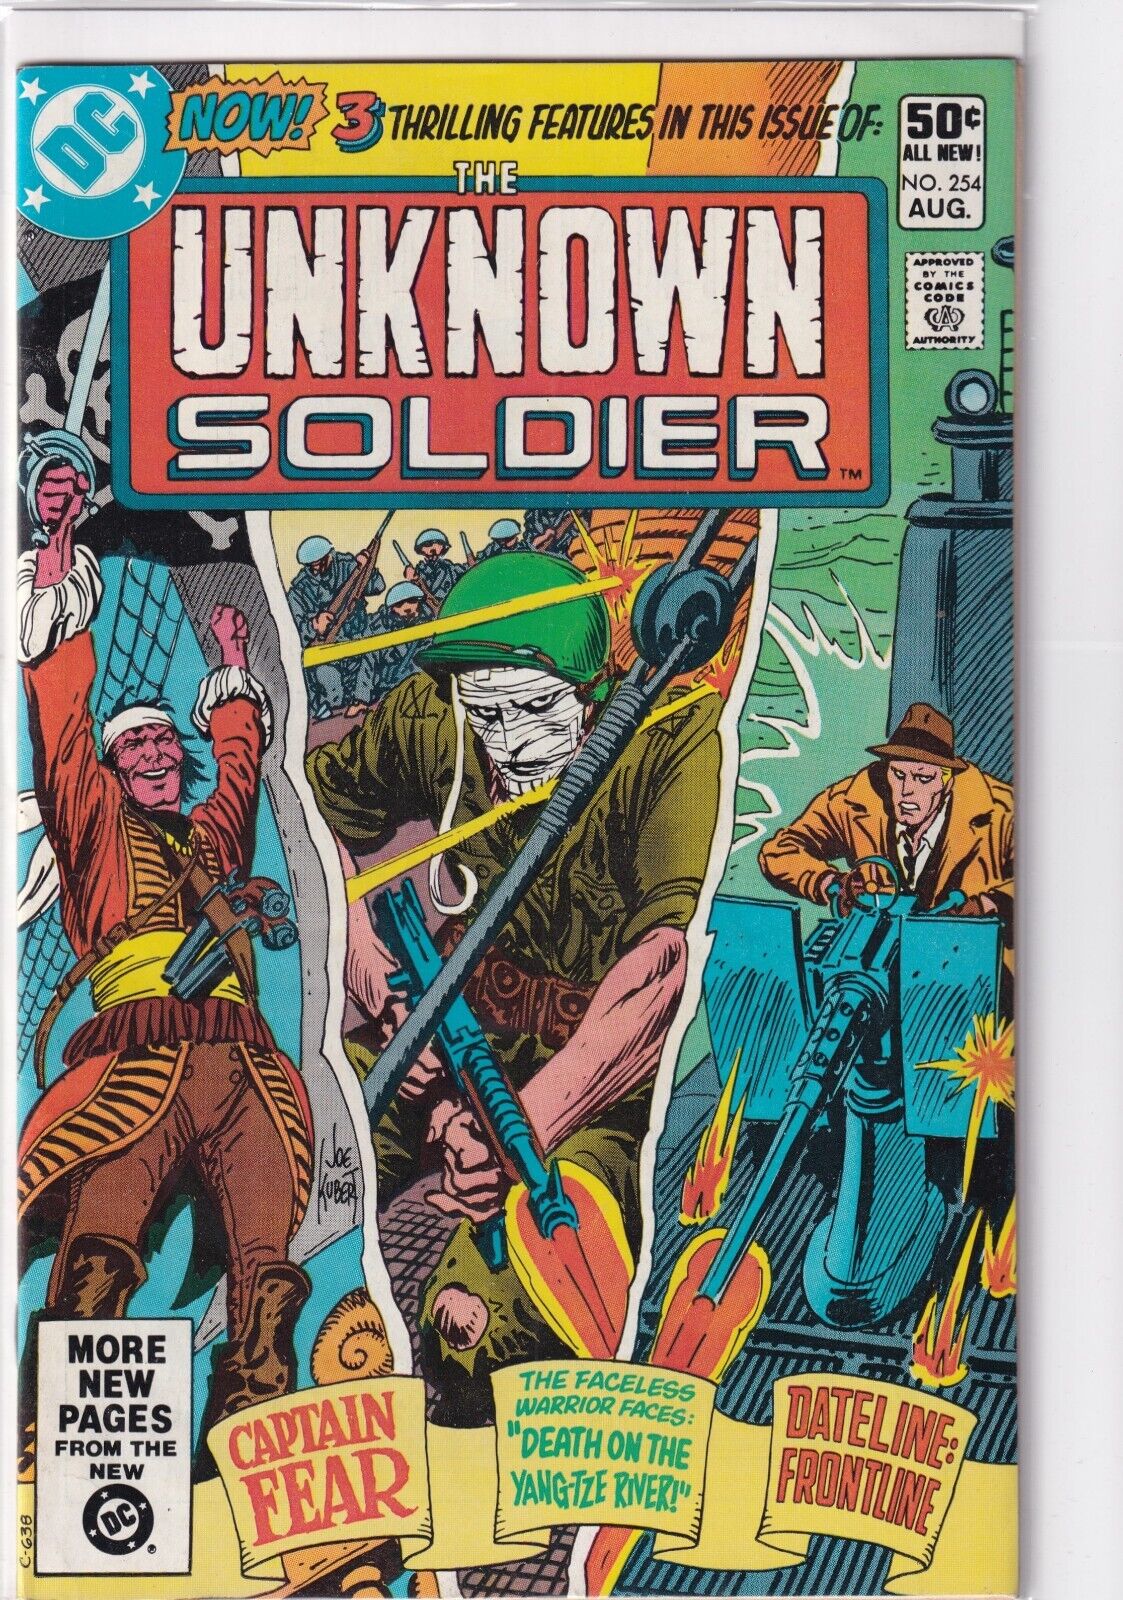 34153: DC Comics UNKNOWN SOLDIER #254 VF Grade